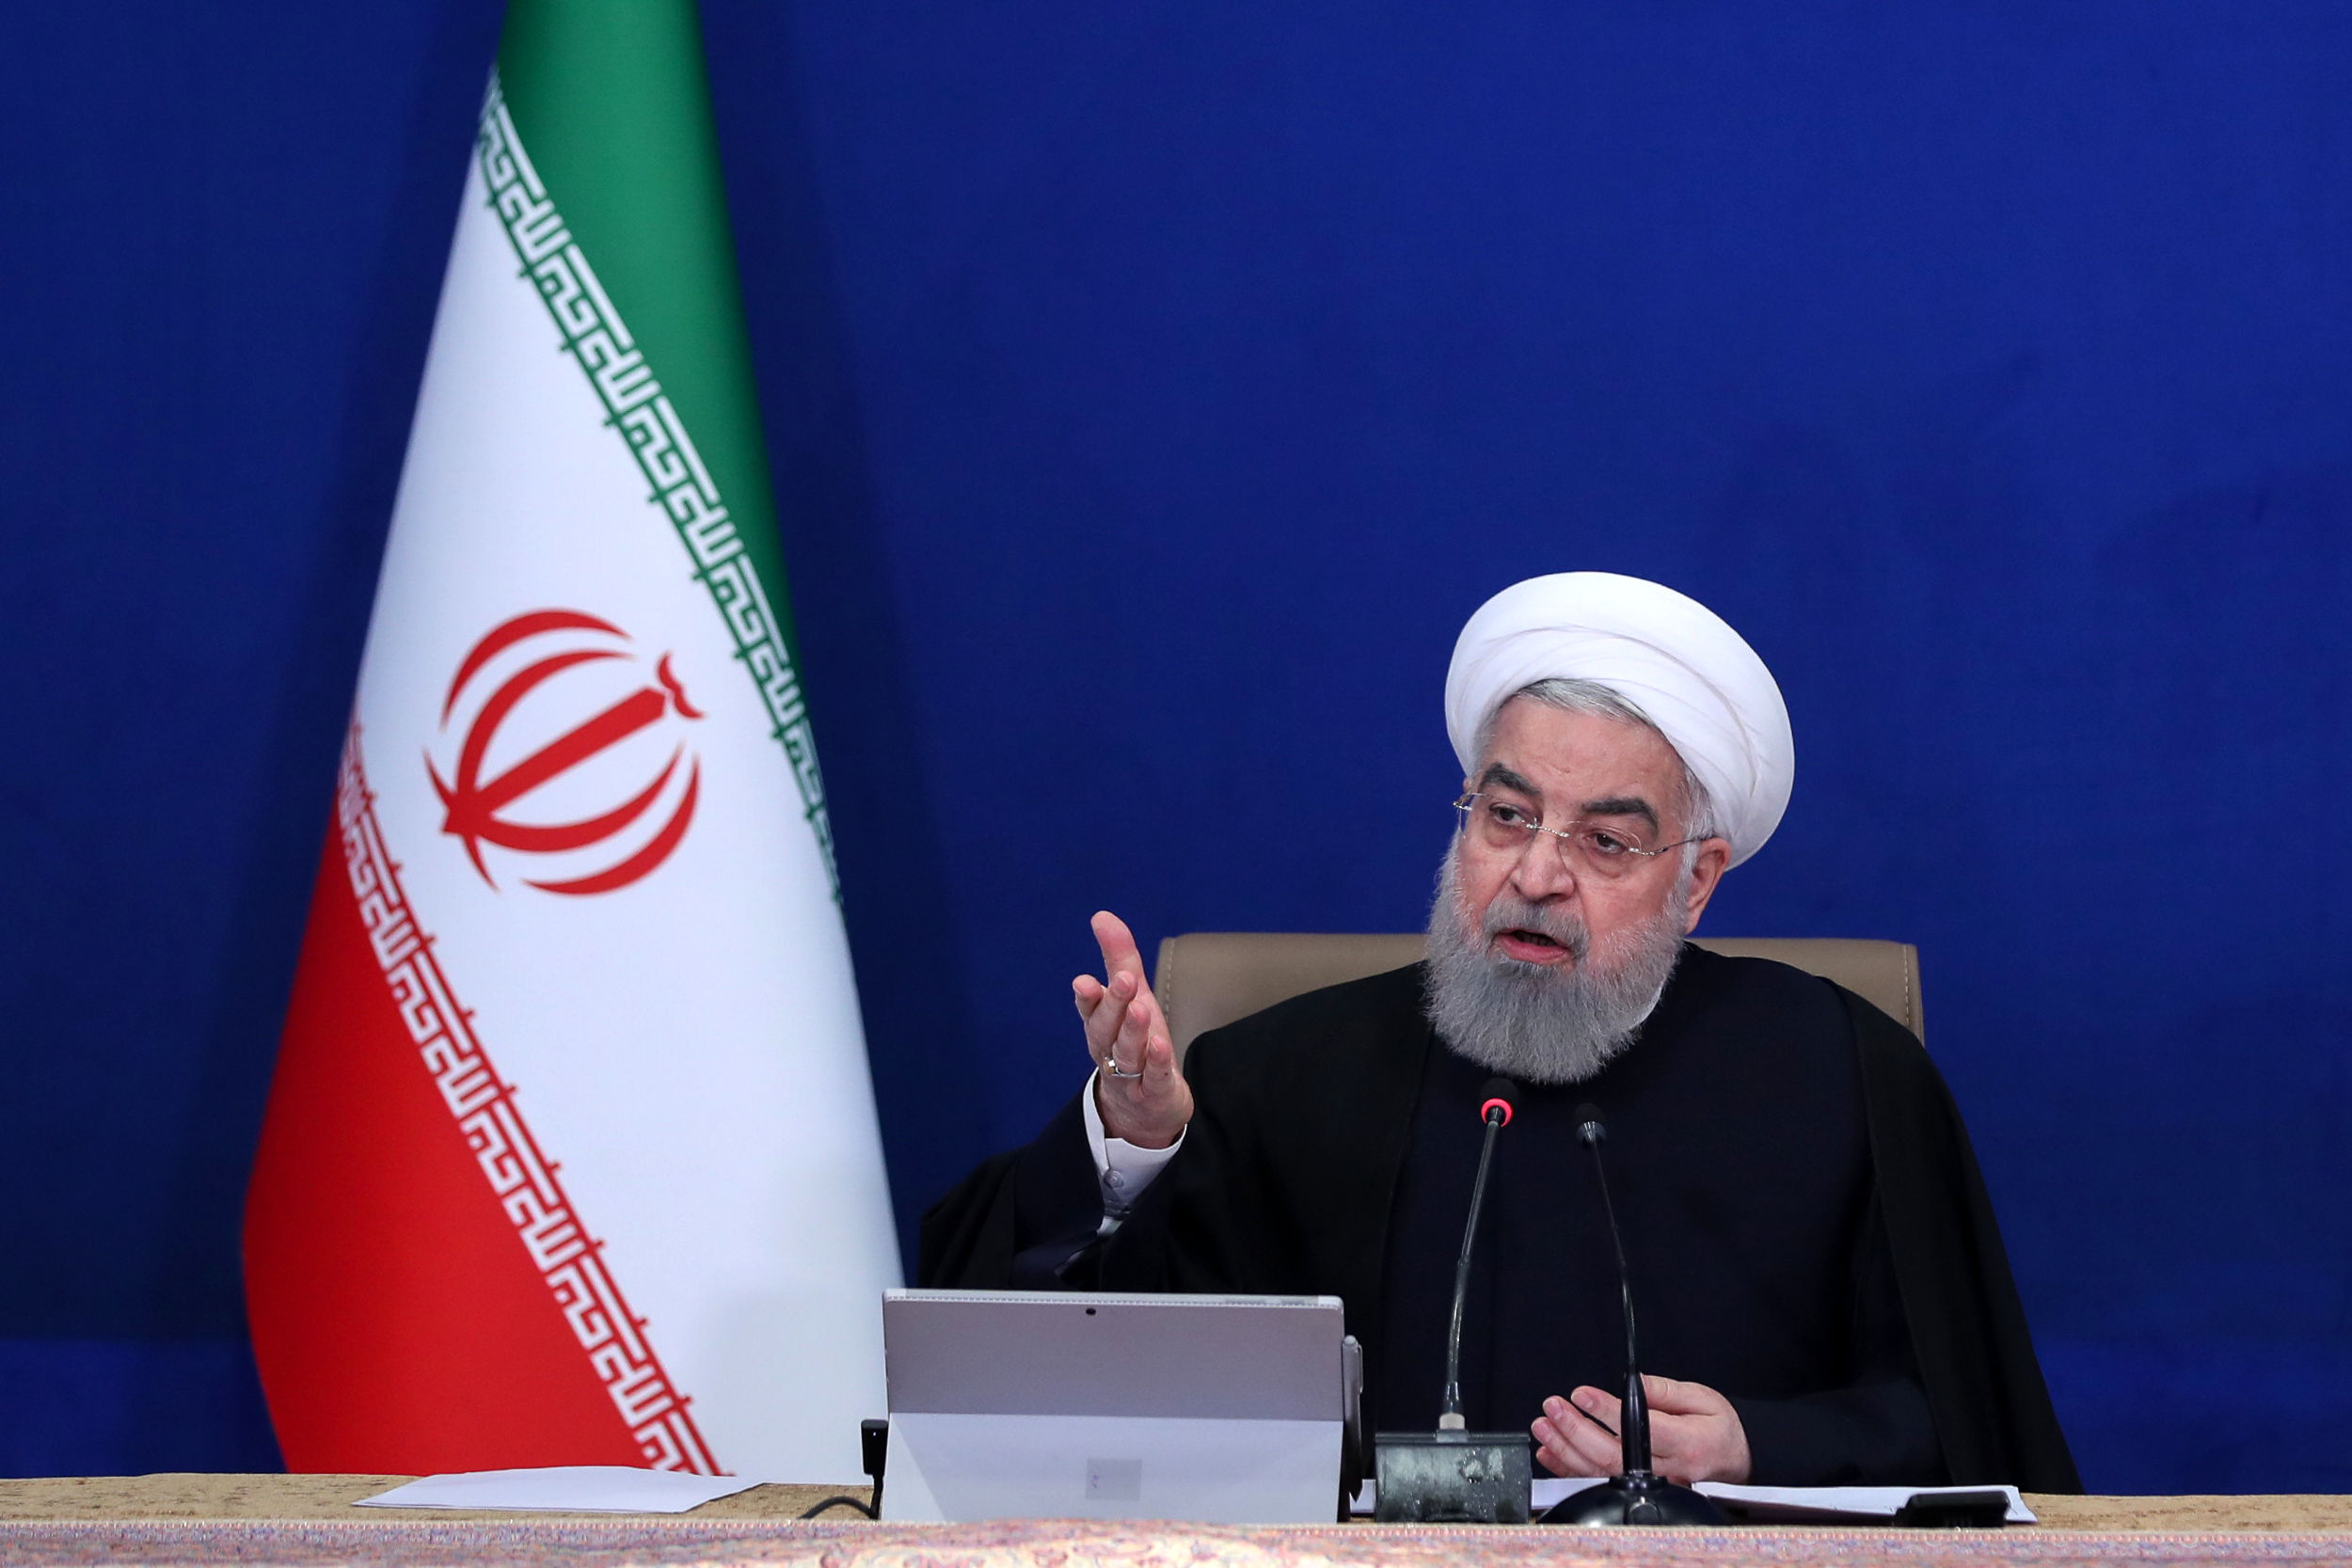  اتمام حجت روحانی با 3 کشور اروپایی پیش از جلسه شورای حکام